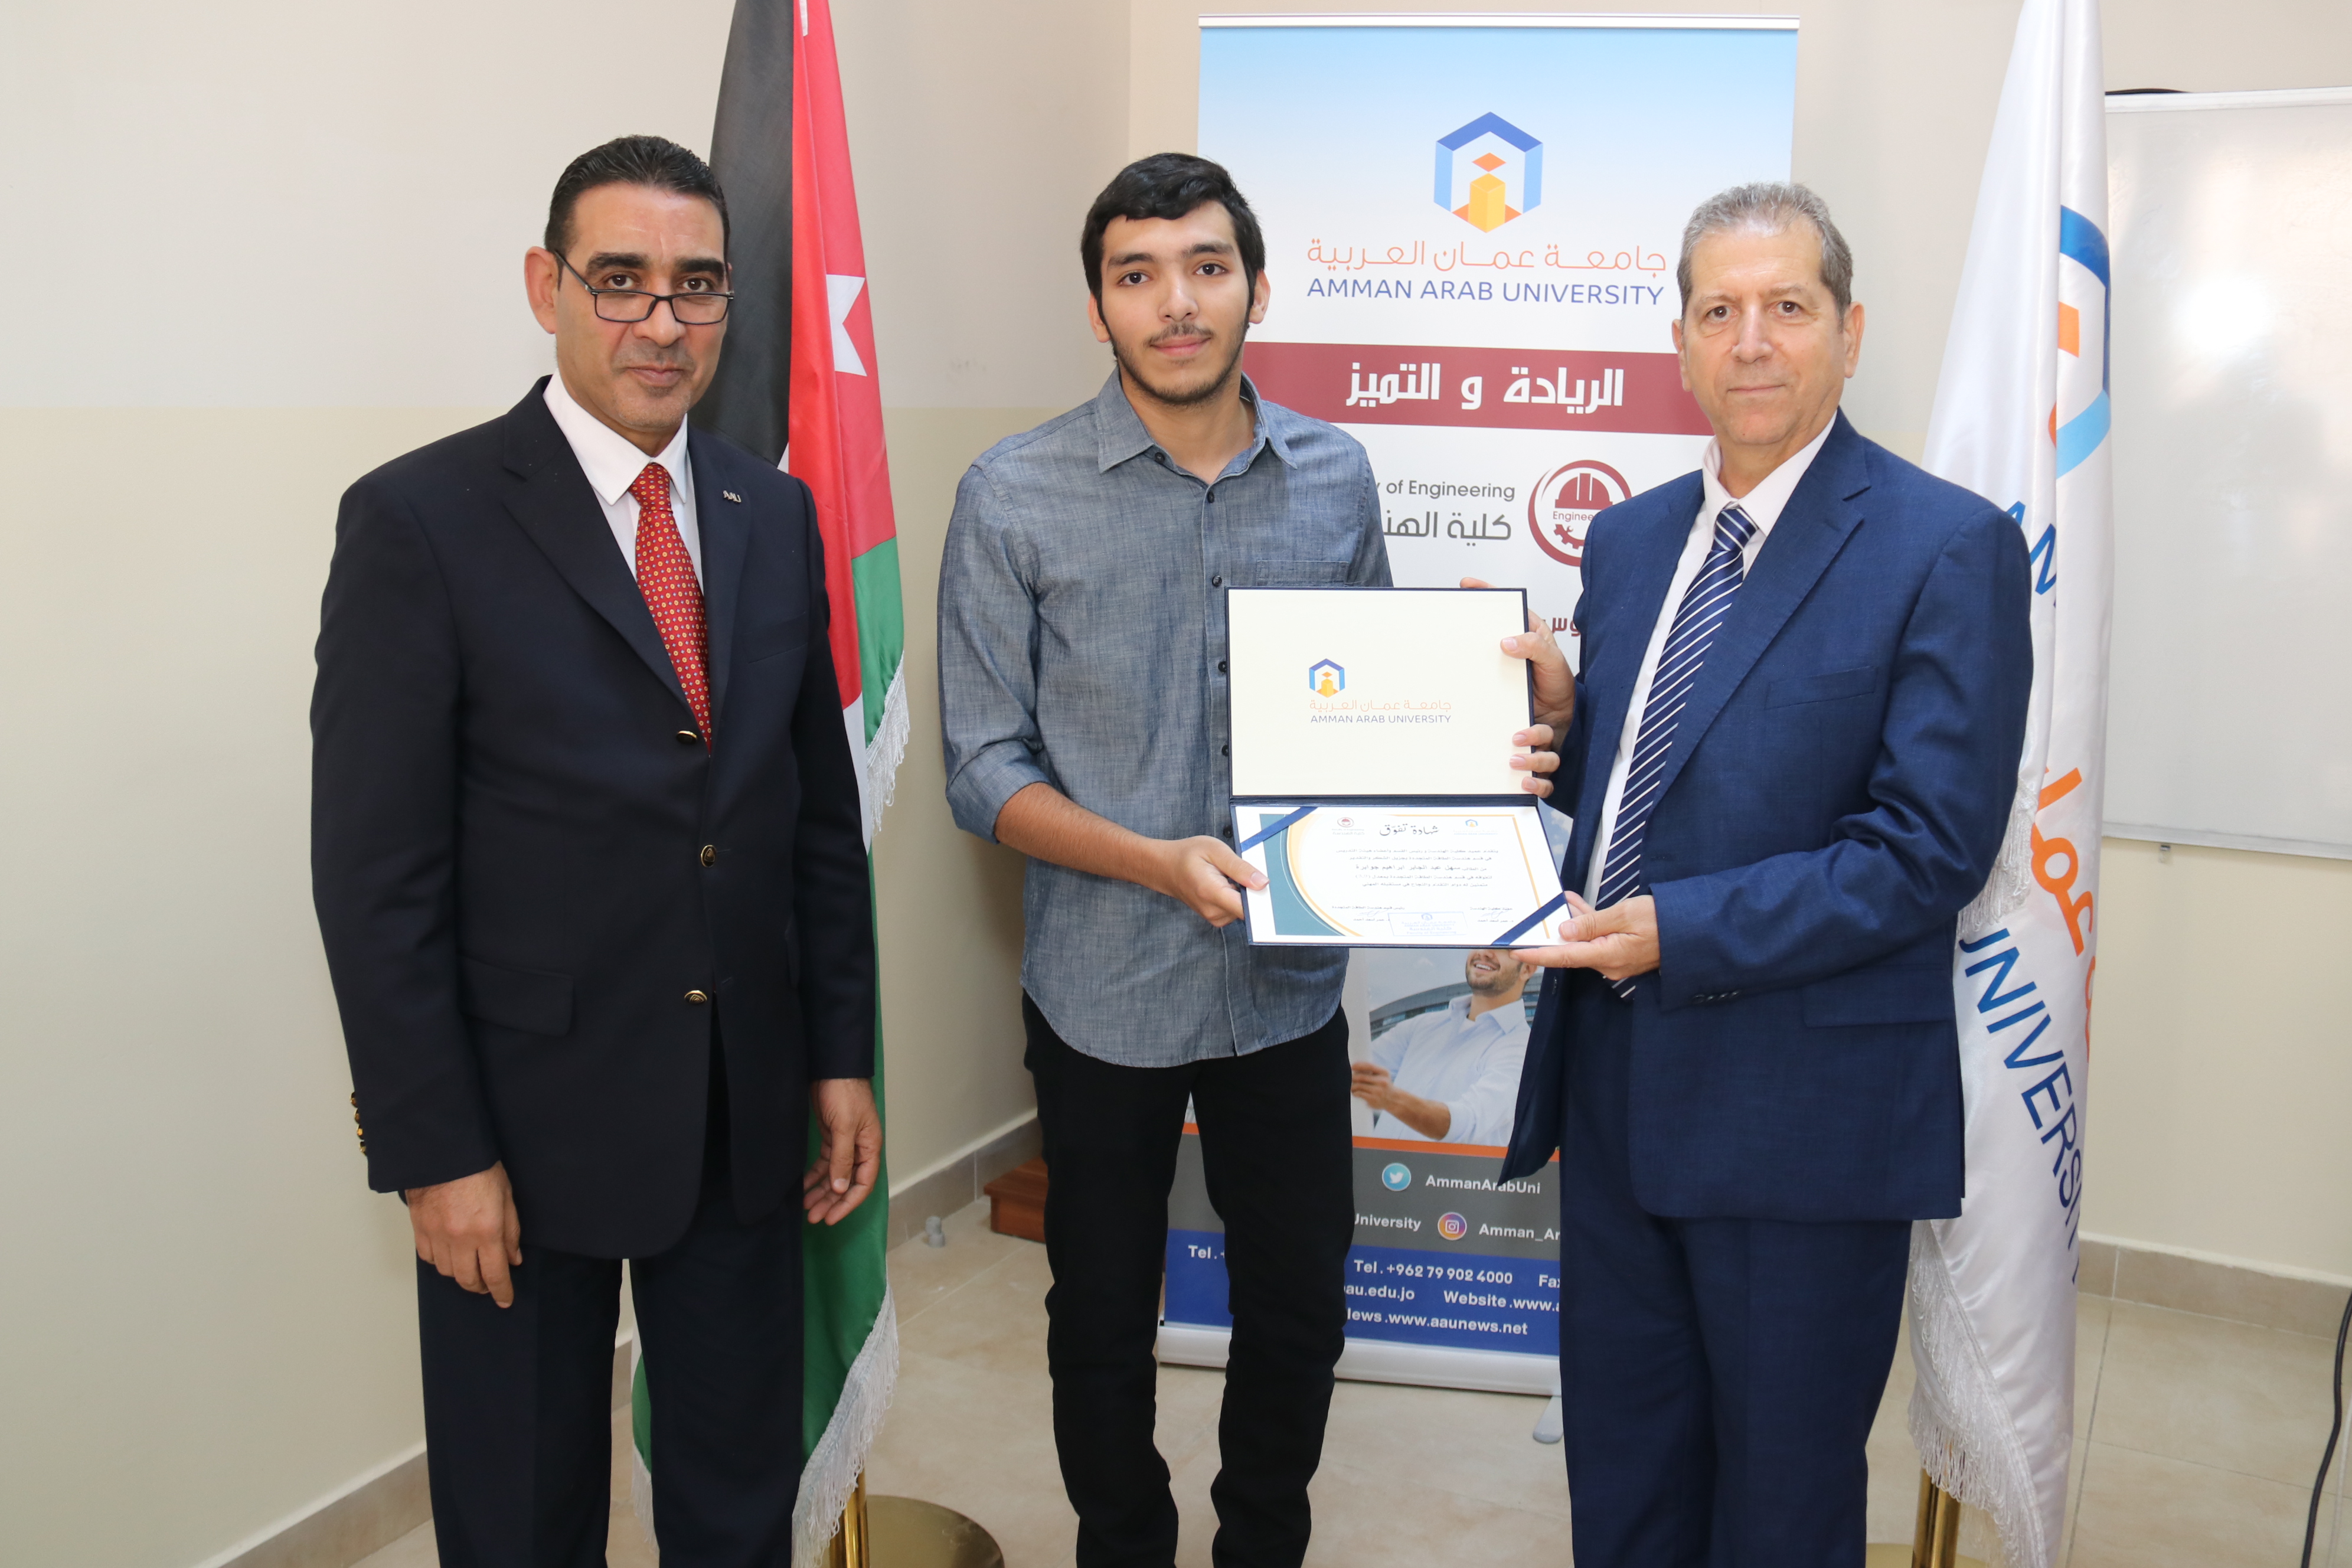 كلية الهندسة في "عمان العربية" تكرم الطلبة الأوائل14